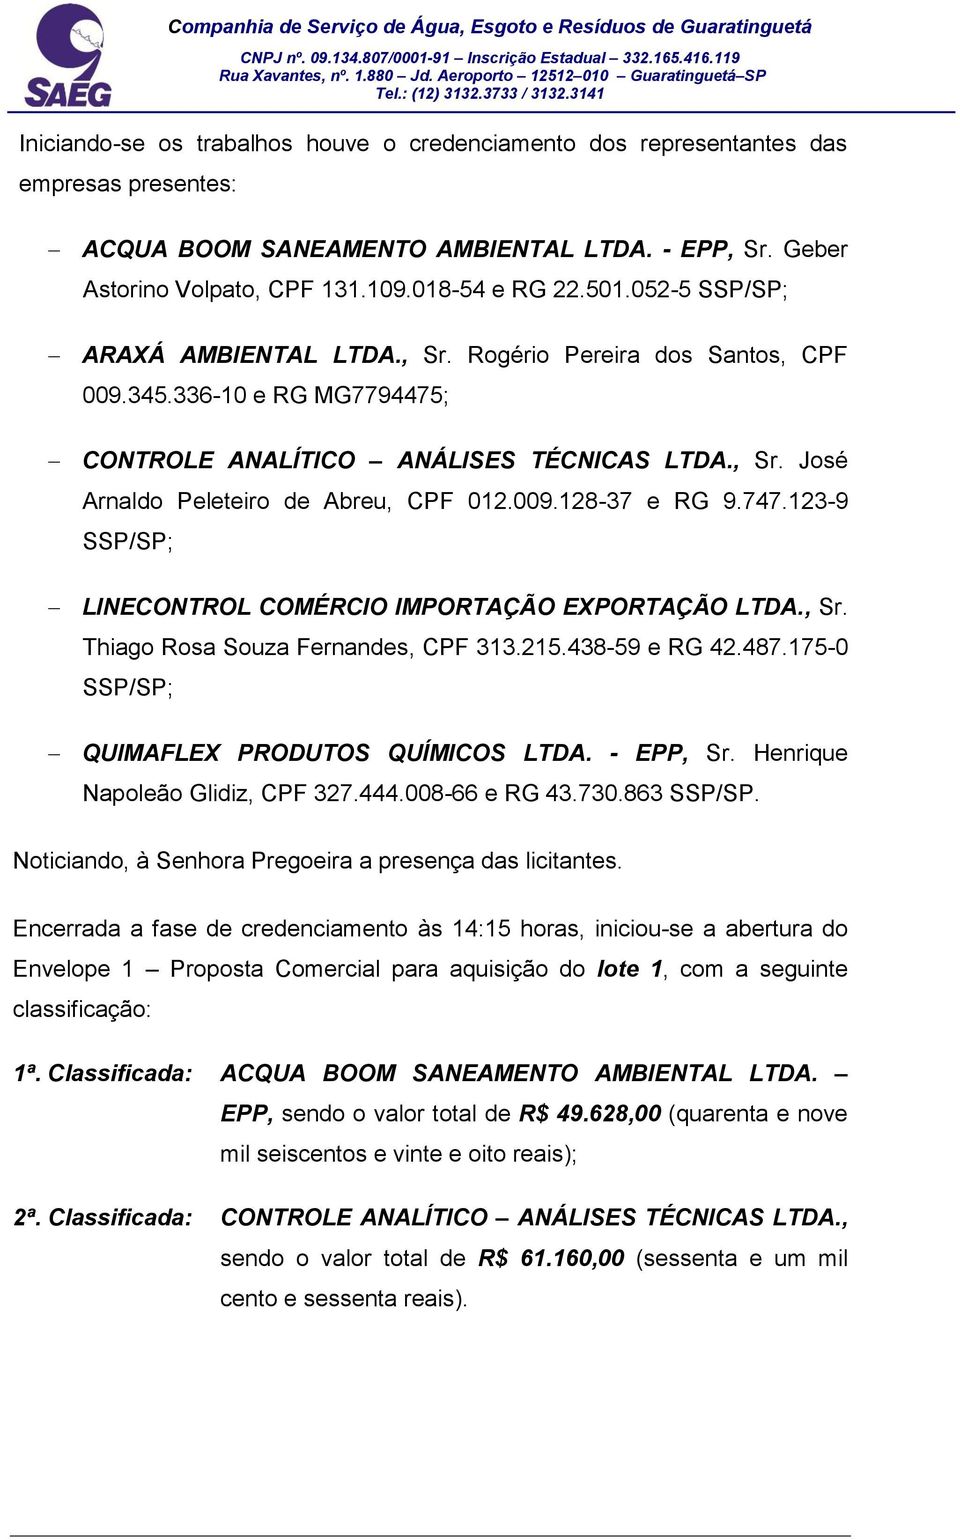 747.123-9 SSP/SP; LINECONTROL COMÉRCIO IMPORTAÇÃO EXPORTAÇÃO LTDA., Sr. Thiago Rosa Souza Fernandes, CPF 313.215.438-59 e RG 42.487.175-0 SSP/SP; QUIMAFLEX PRODUTOS QUÍMICOS LTDA. - EPP, Sr.